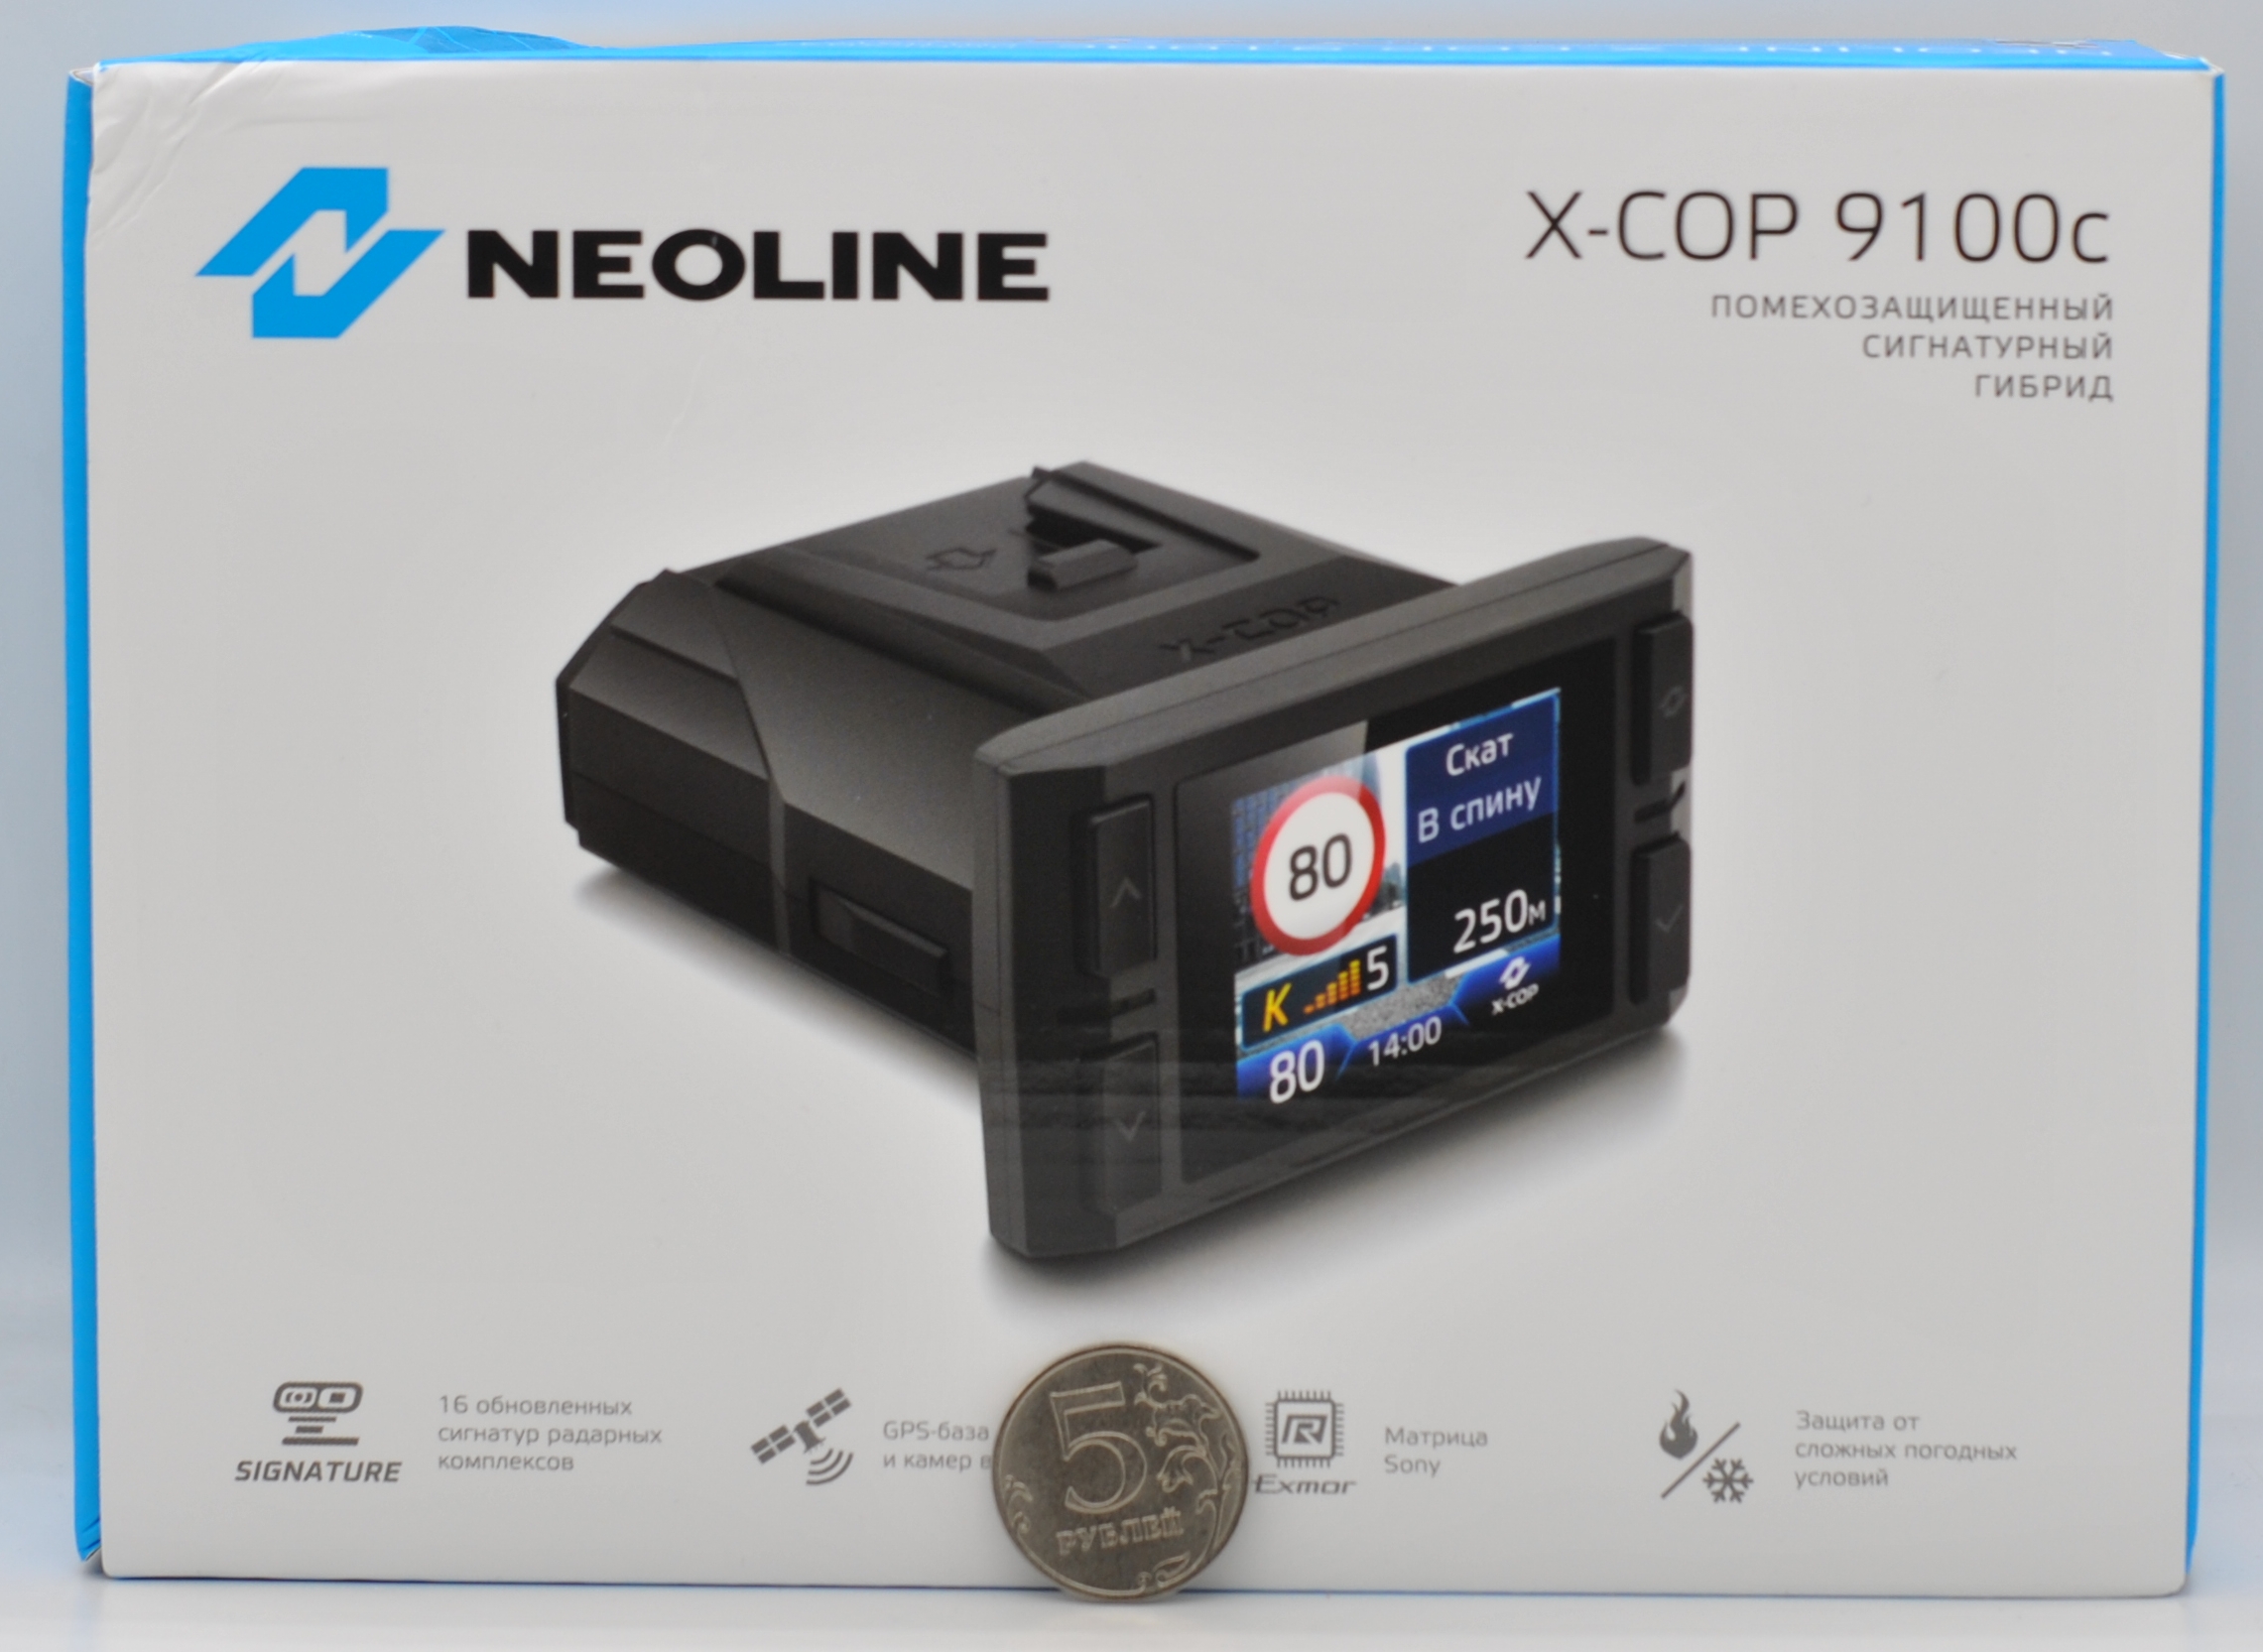 Neoline x-cop 9100x. X-cop 6000c. Где на коробке находится серийный номер устройства гибрила Neoline xcop 9100z. Neoline x cop гибрид